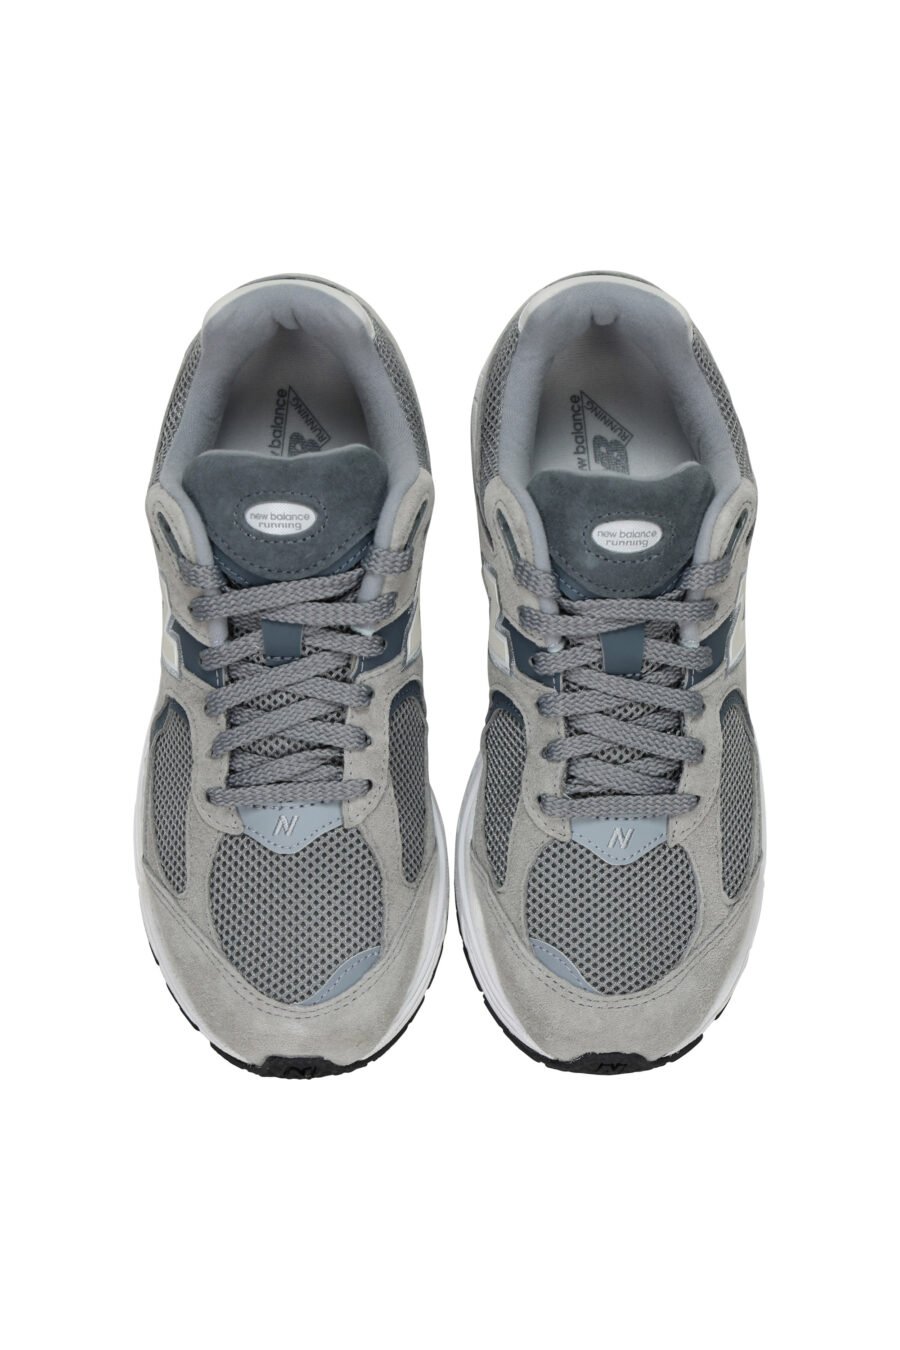 Zapatillas grises mix con negro "2002R" y logo "N" blanco - 196432152469 4